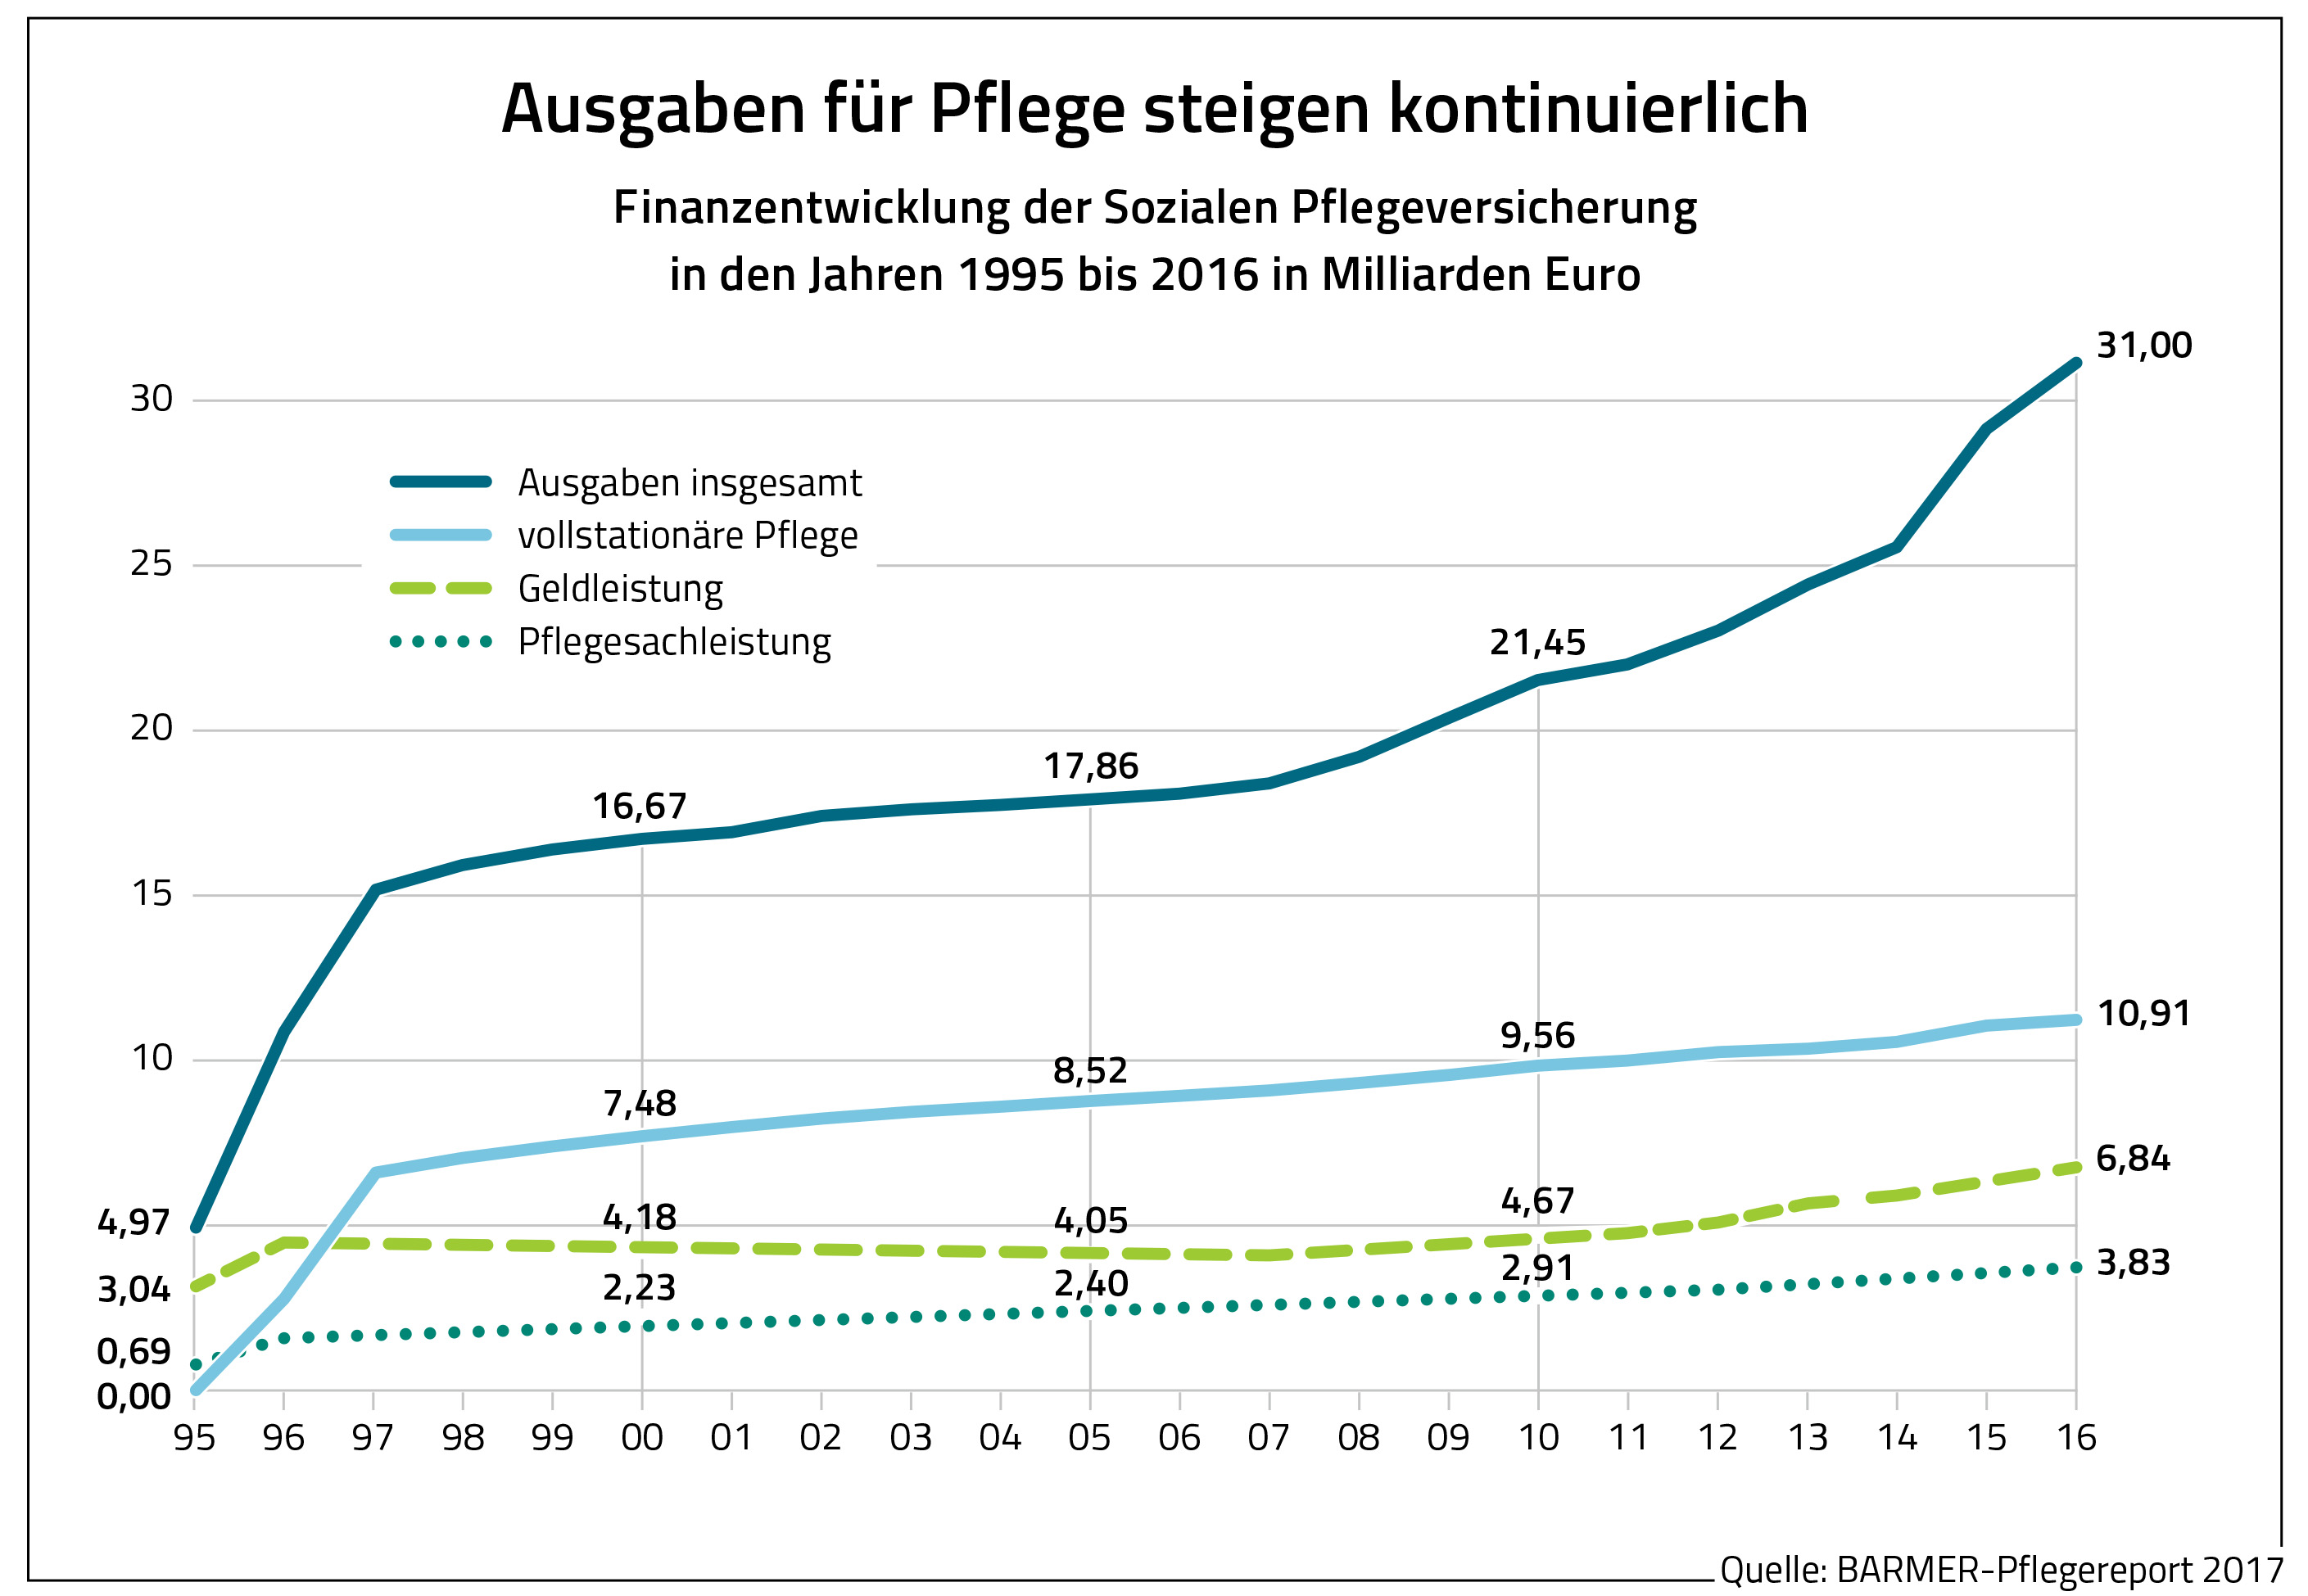 Die Grafik zeigt die Finanzentwicklung der Sozialen Pflegeversicherung in den Jahren 1995 bis 2019 in Milliarden Euro.